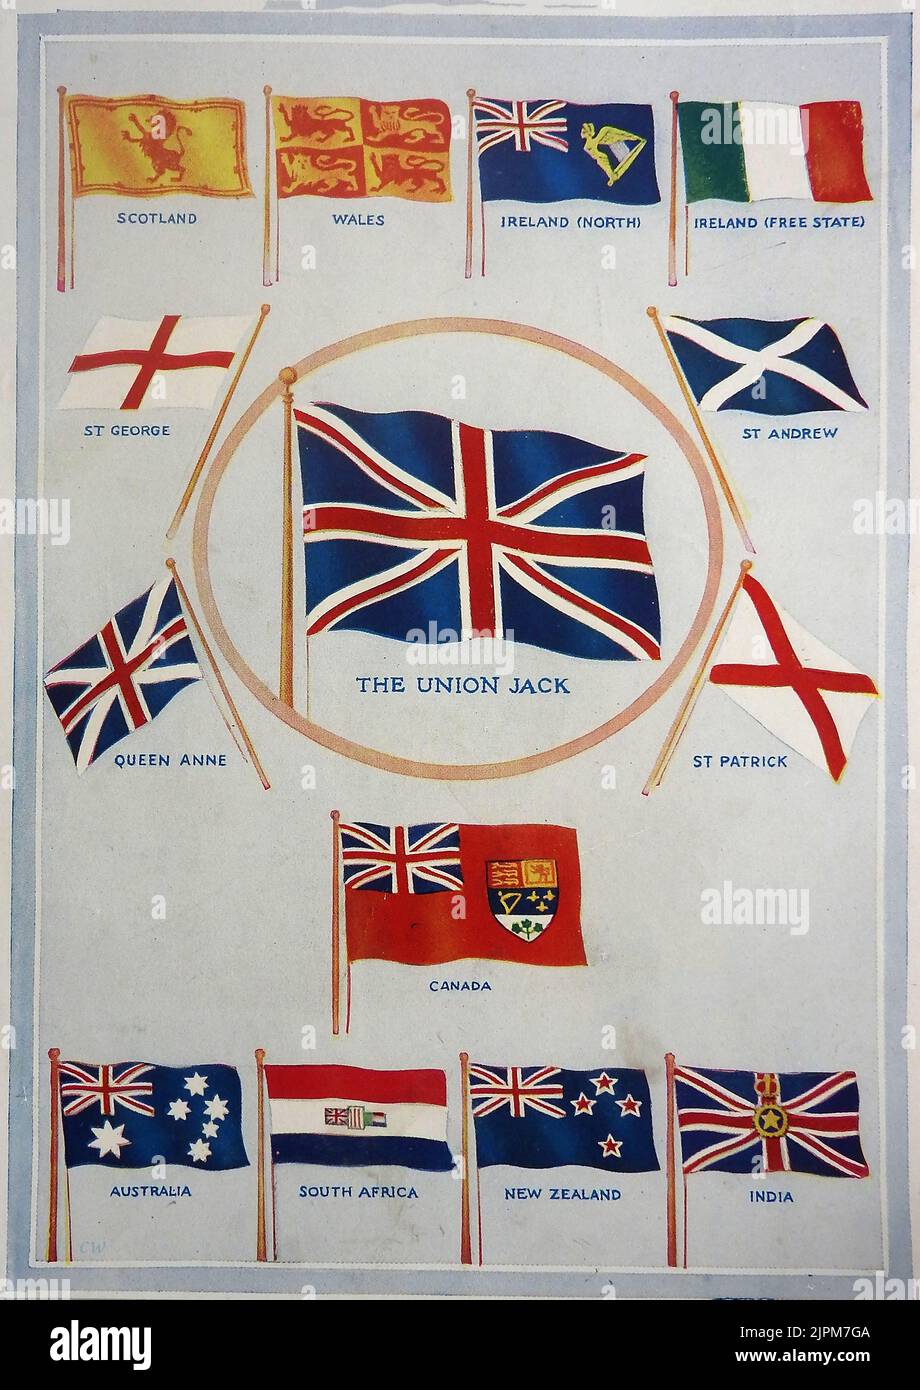 Una carta de identificación de colores tempranos que muestra las banderas del Imperio Británico Foto de stock